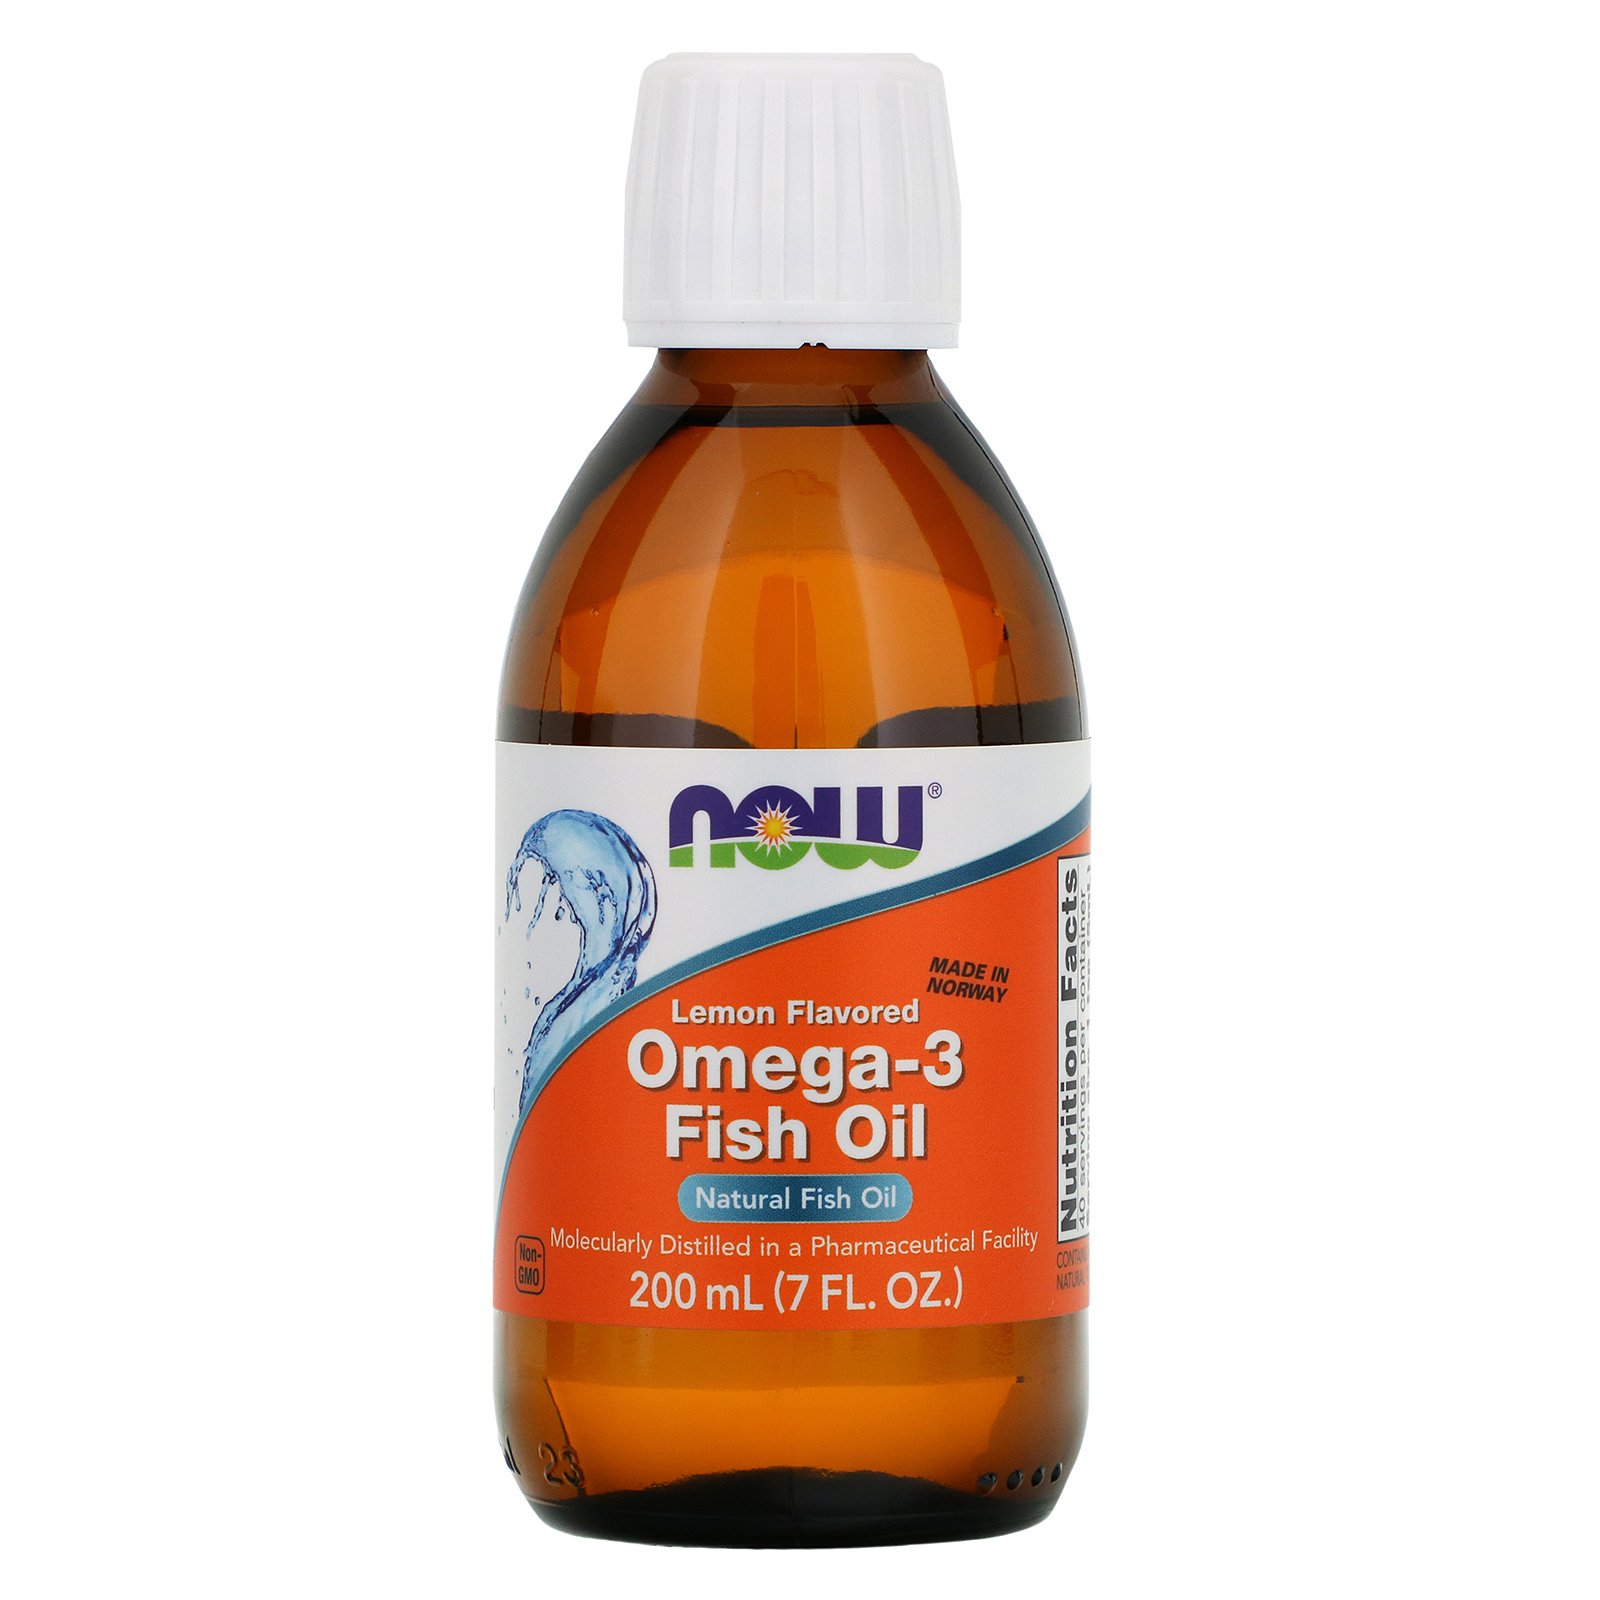 NOW Omega-3 Oil, Омега-3 в Жидкой Форме с Лимонным Вкусом - 200 мл